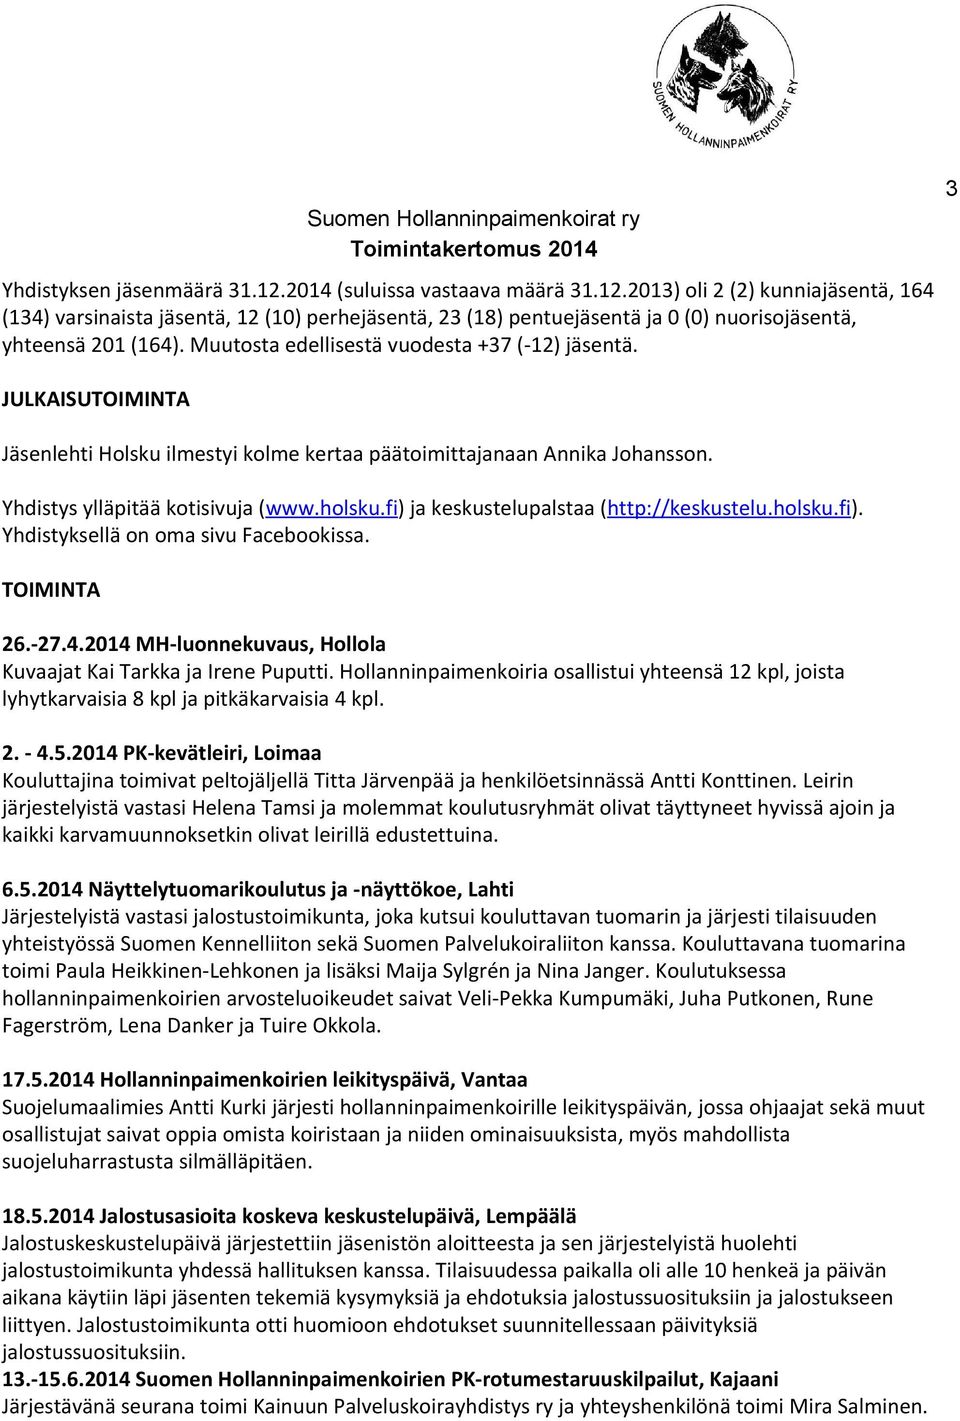 fi ) ja keskustelupalstaa ( http://keskustelu.holsku.fi ). Yhdistyksellä on oma sivu Facebookissa. TOIMINTA 26.-27.4.2014 MH-luonnekuvaus, Hollola Kuvaajat Kai Tarkka ja Irene Puputti.